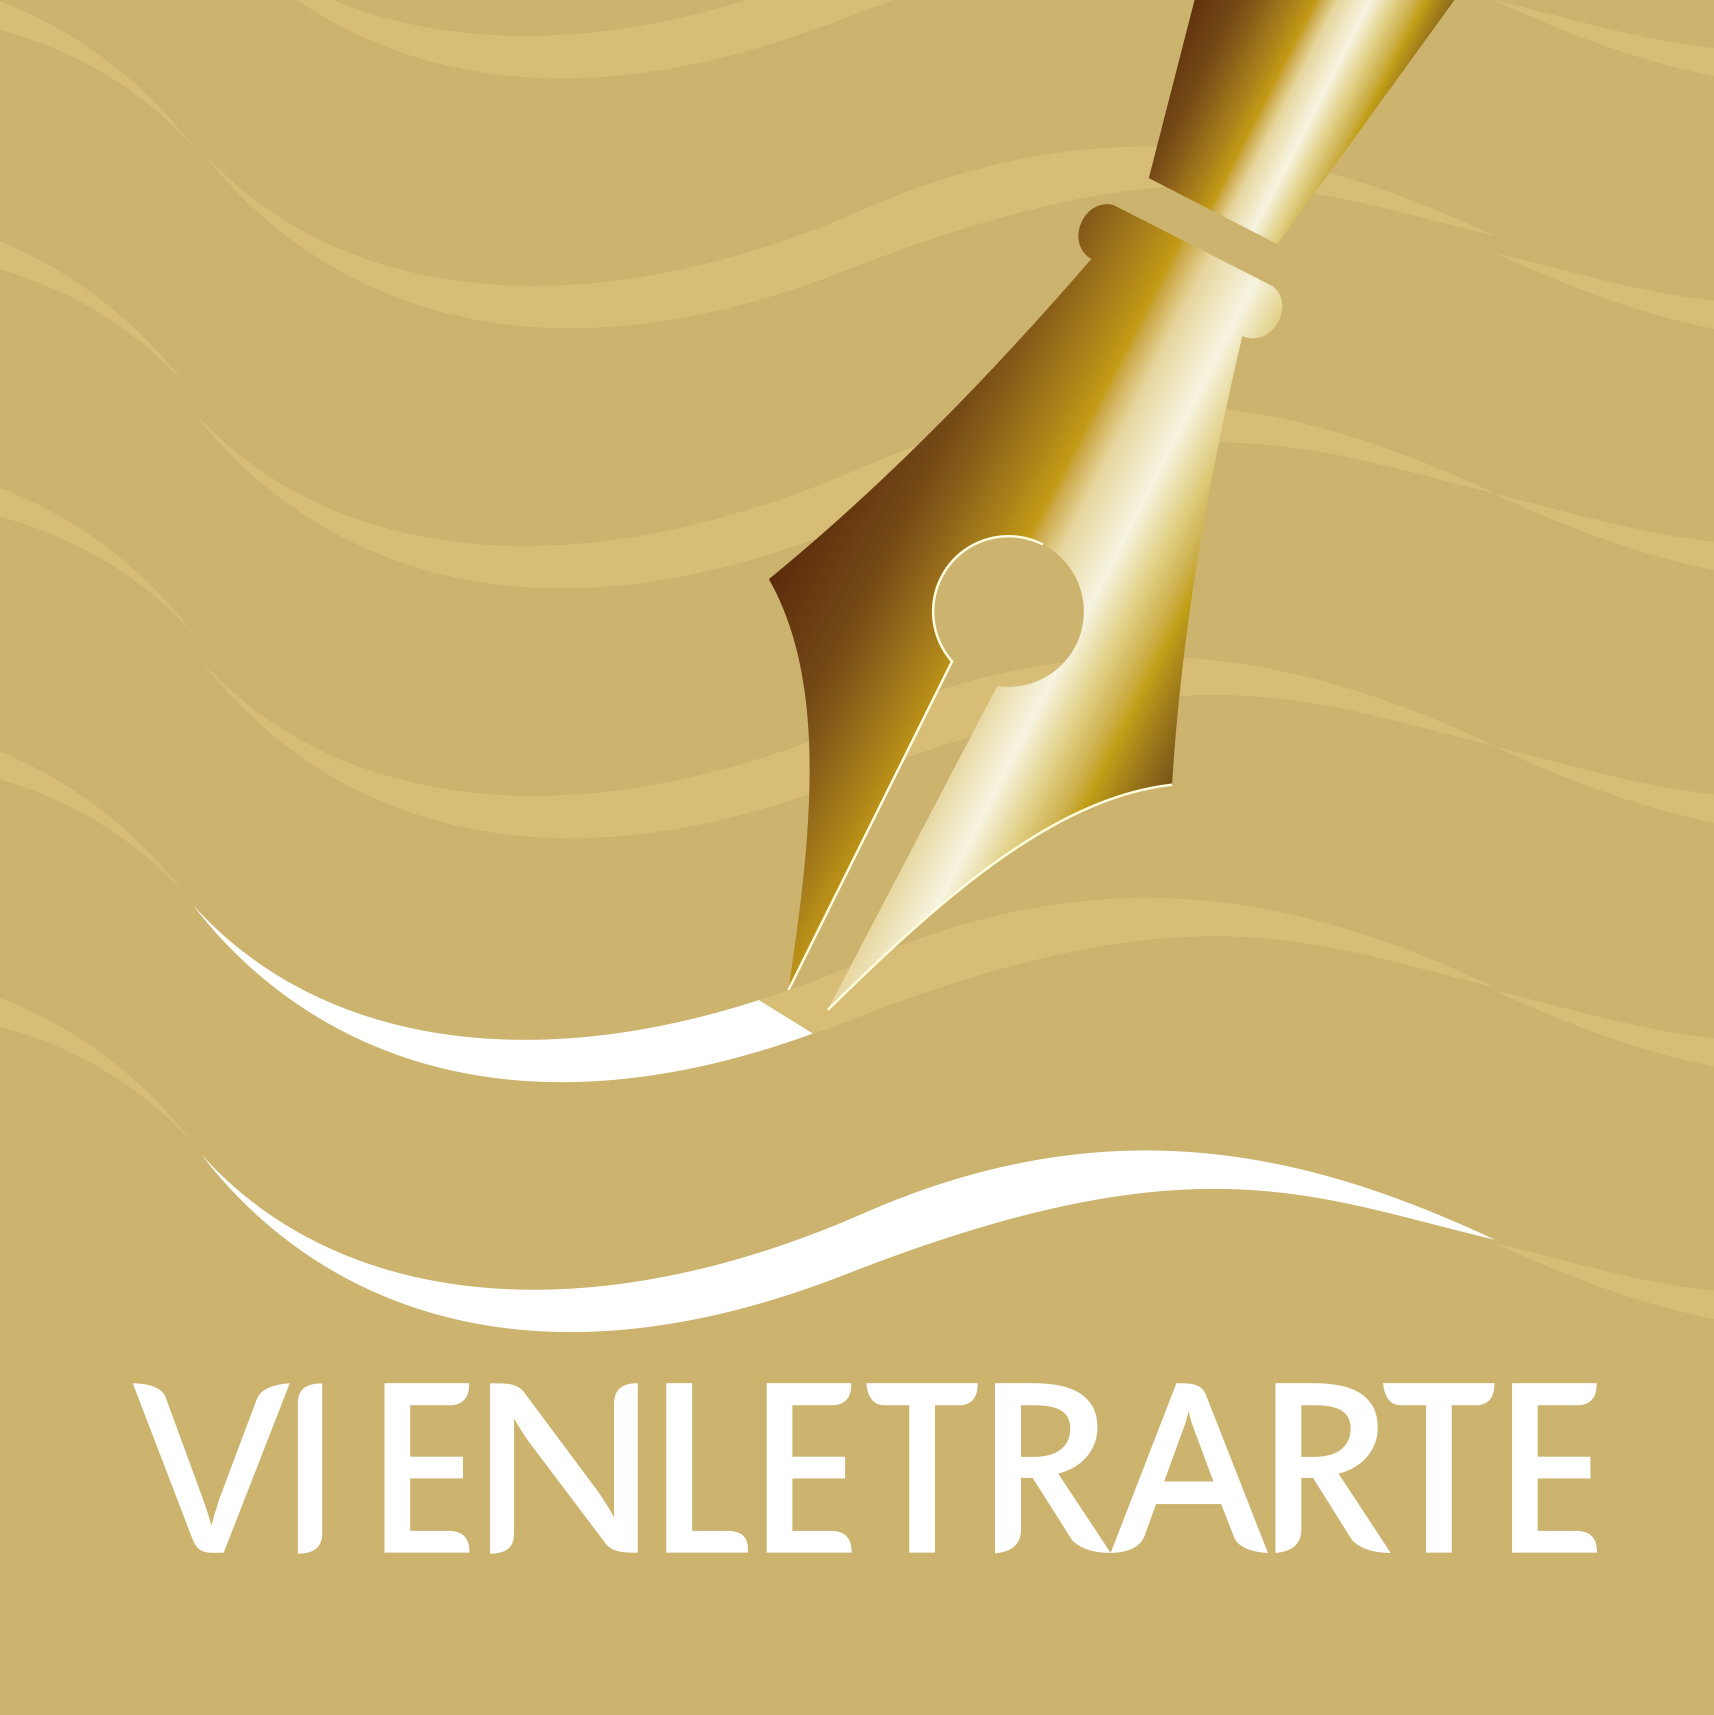 					View 2015: VI Encontro Nacional de Professores de Letras e Artes
				